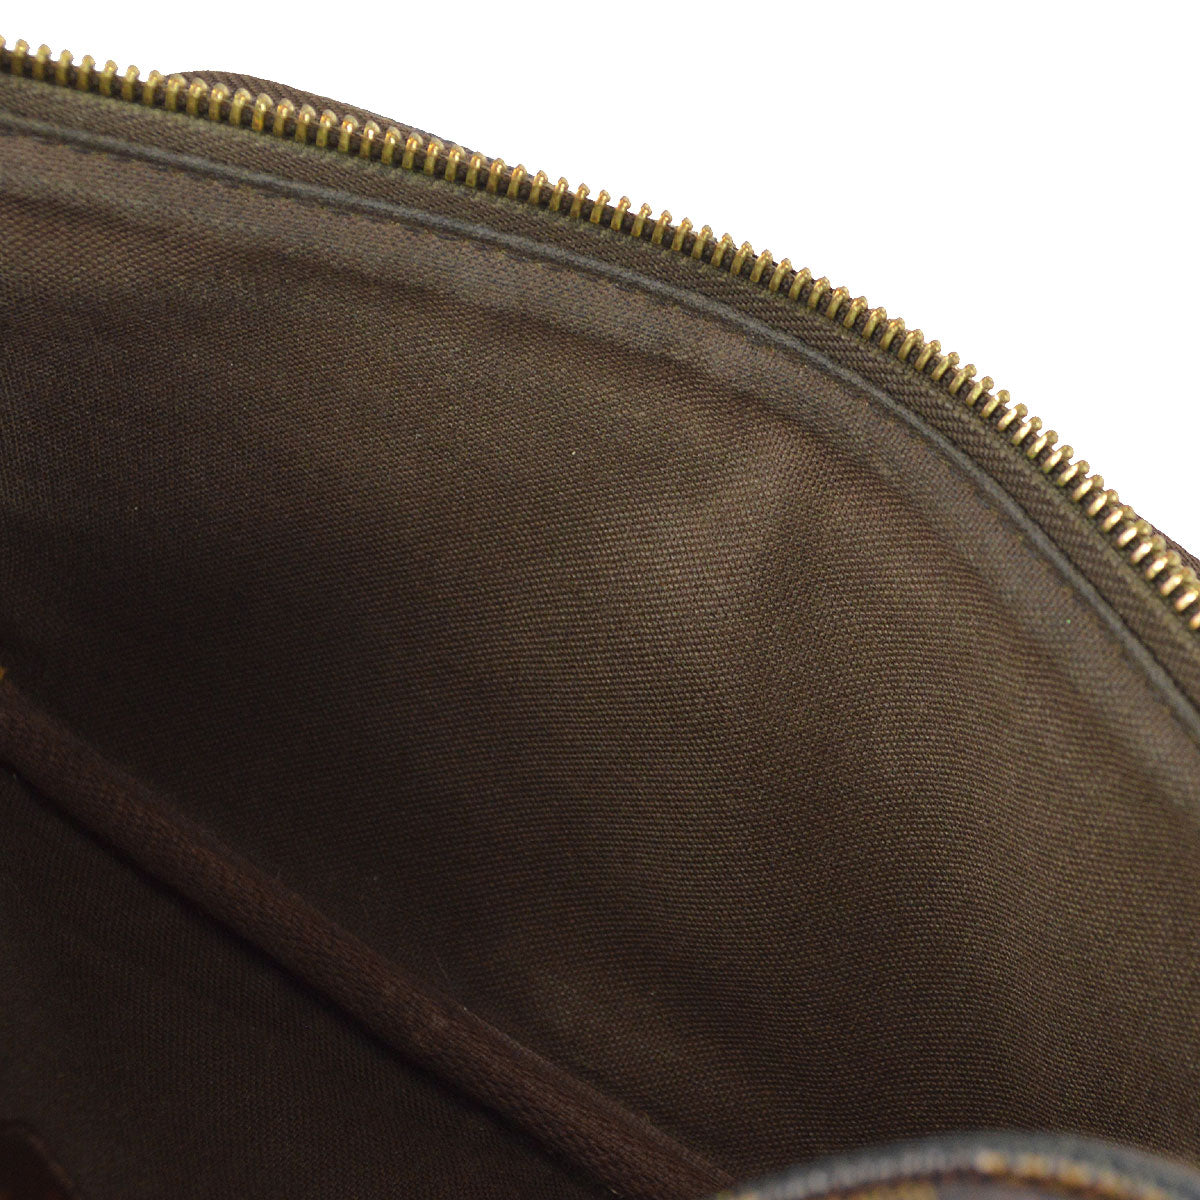 ep_vintage luxury Store - Damier - Melville - Body - Vuitton - N51172 – dct  - Bag - Bam - Waist - Louis - Bag - Louis Vuitton Archlight Sneakers Vivier  Viv Ranger Boots - Bag